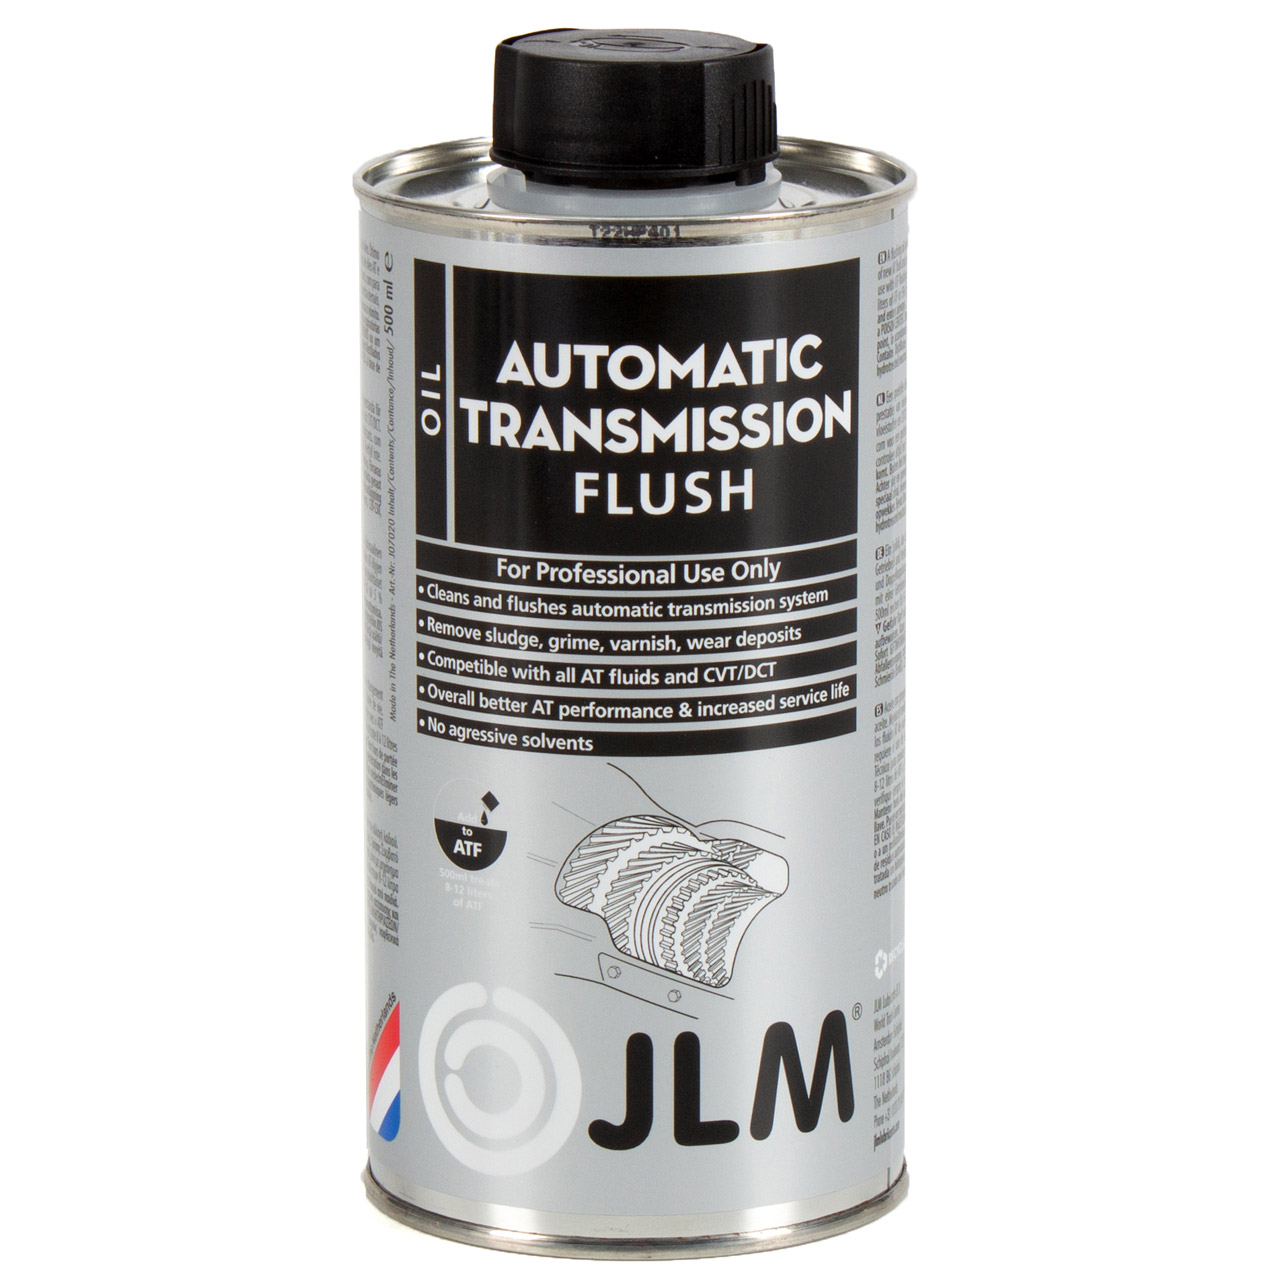 JLM Automatic Transmission Flush Automatikgetriebespülung Getriebespülung 500ml